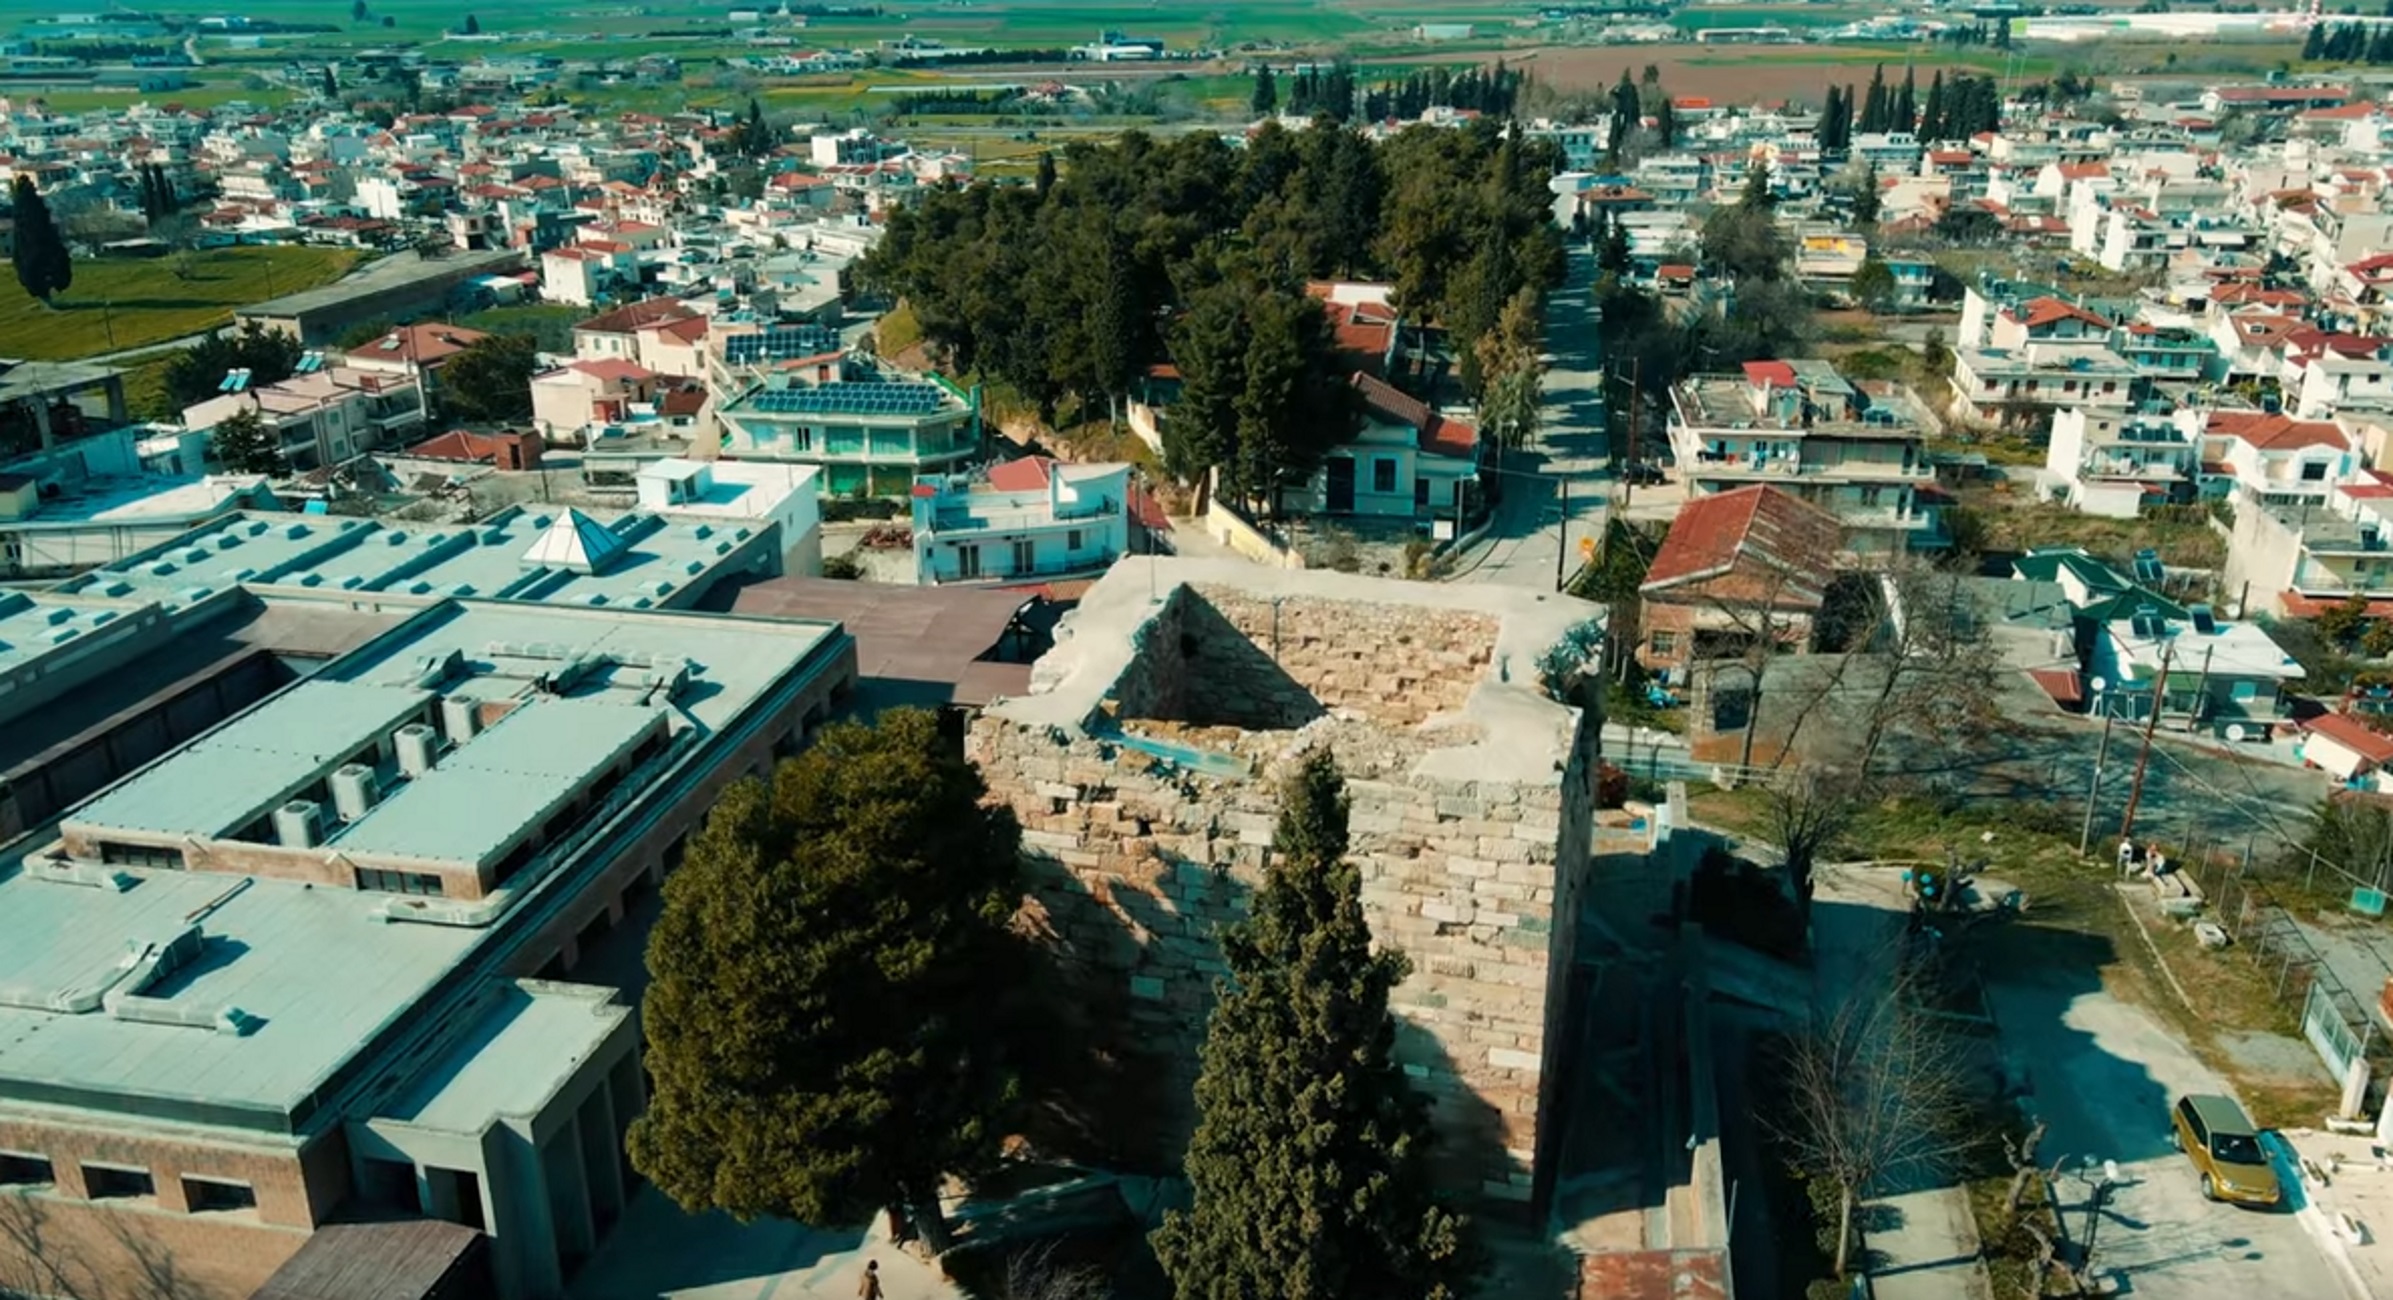 Σεισμός στη Θήβα 3 Ρίχτερ: Νέα επιφανειακή σεισμική δόνηση έγινε αισθητή και προκάλεσε ανησυχία